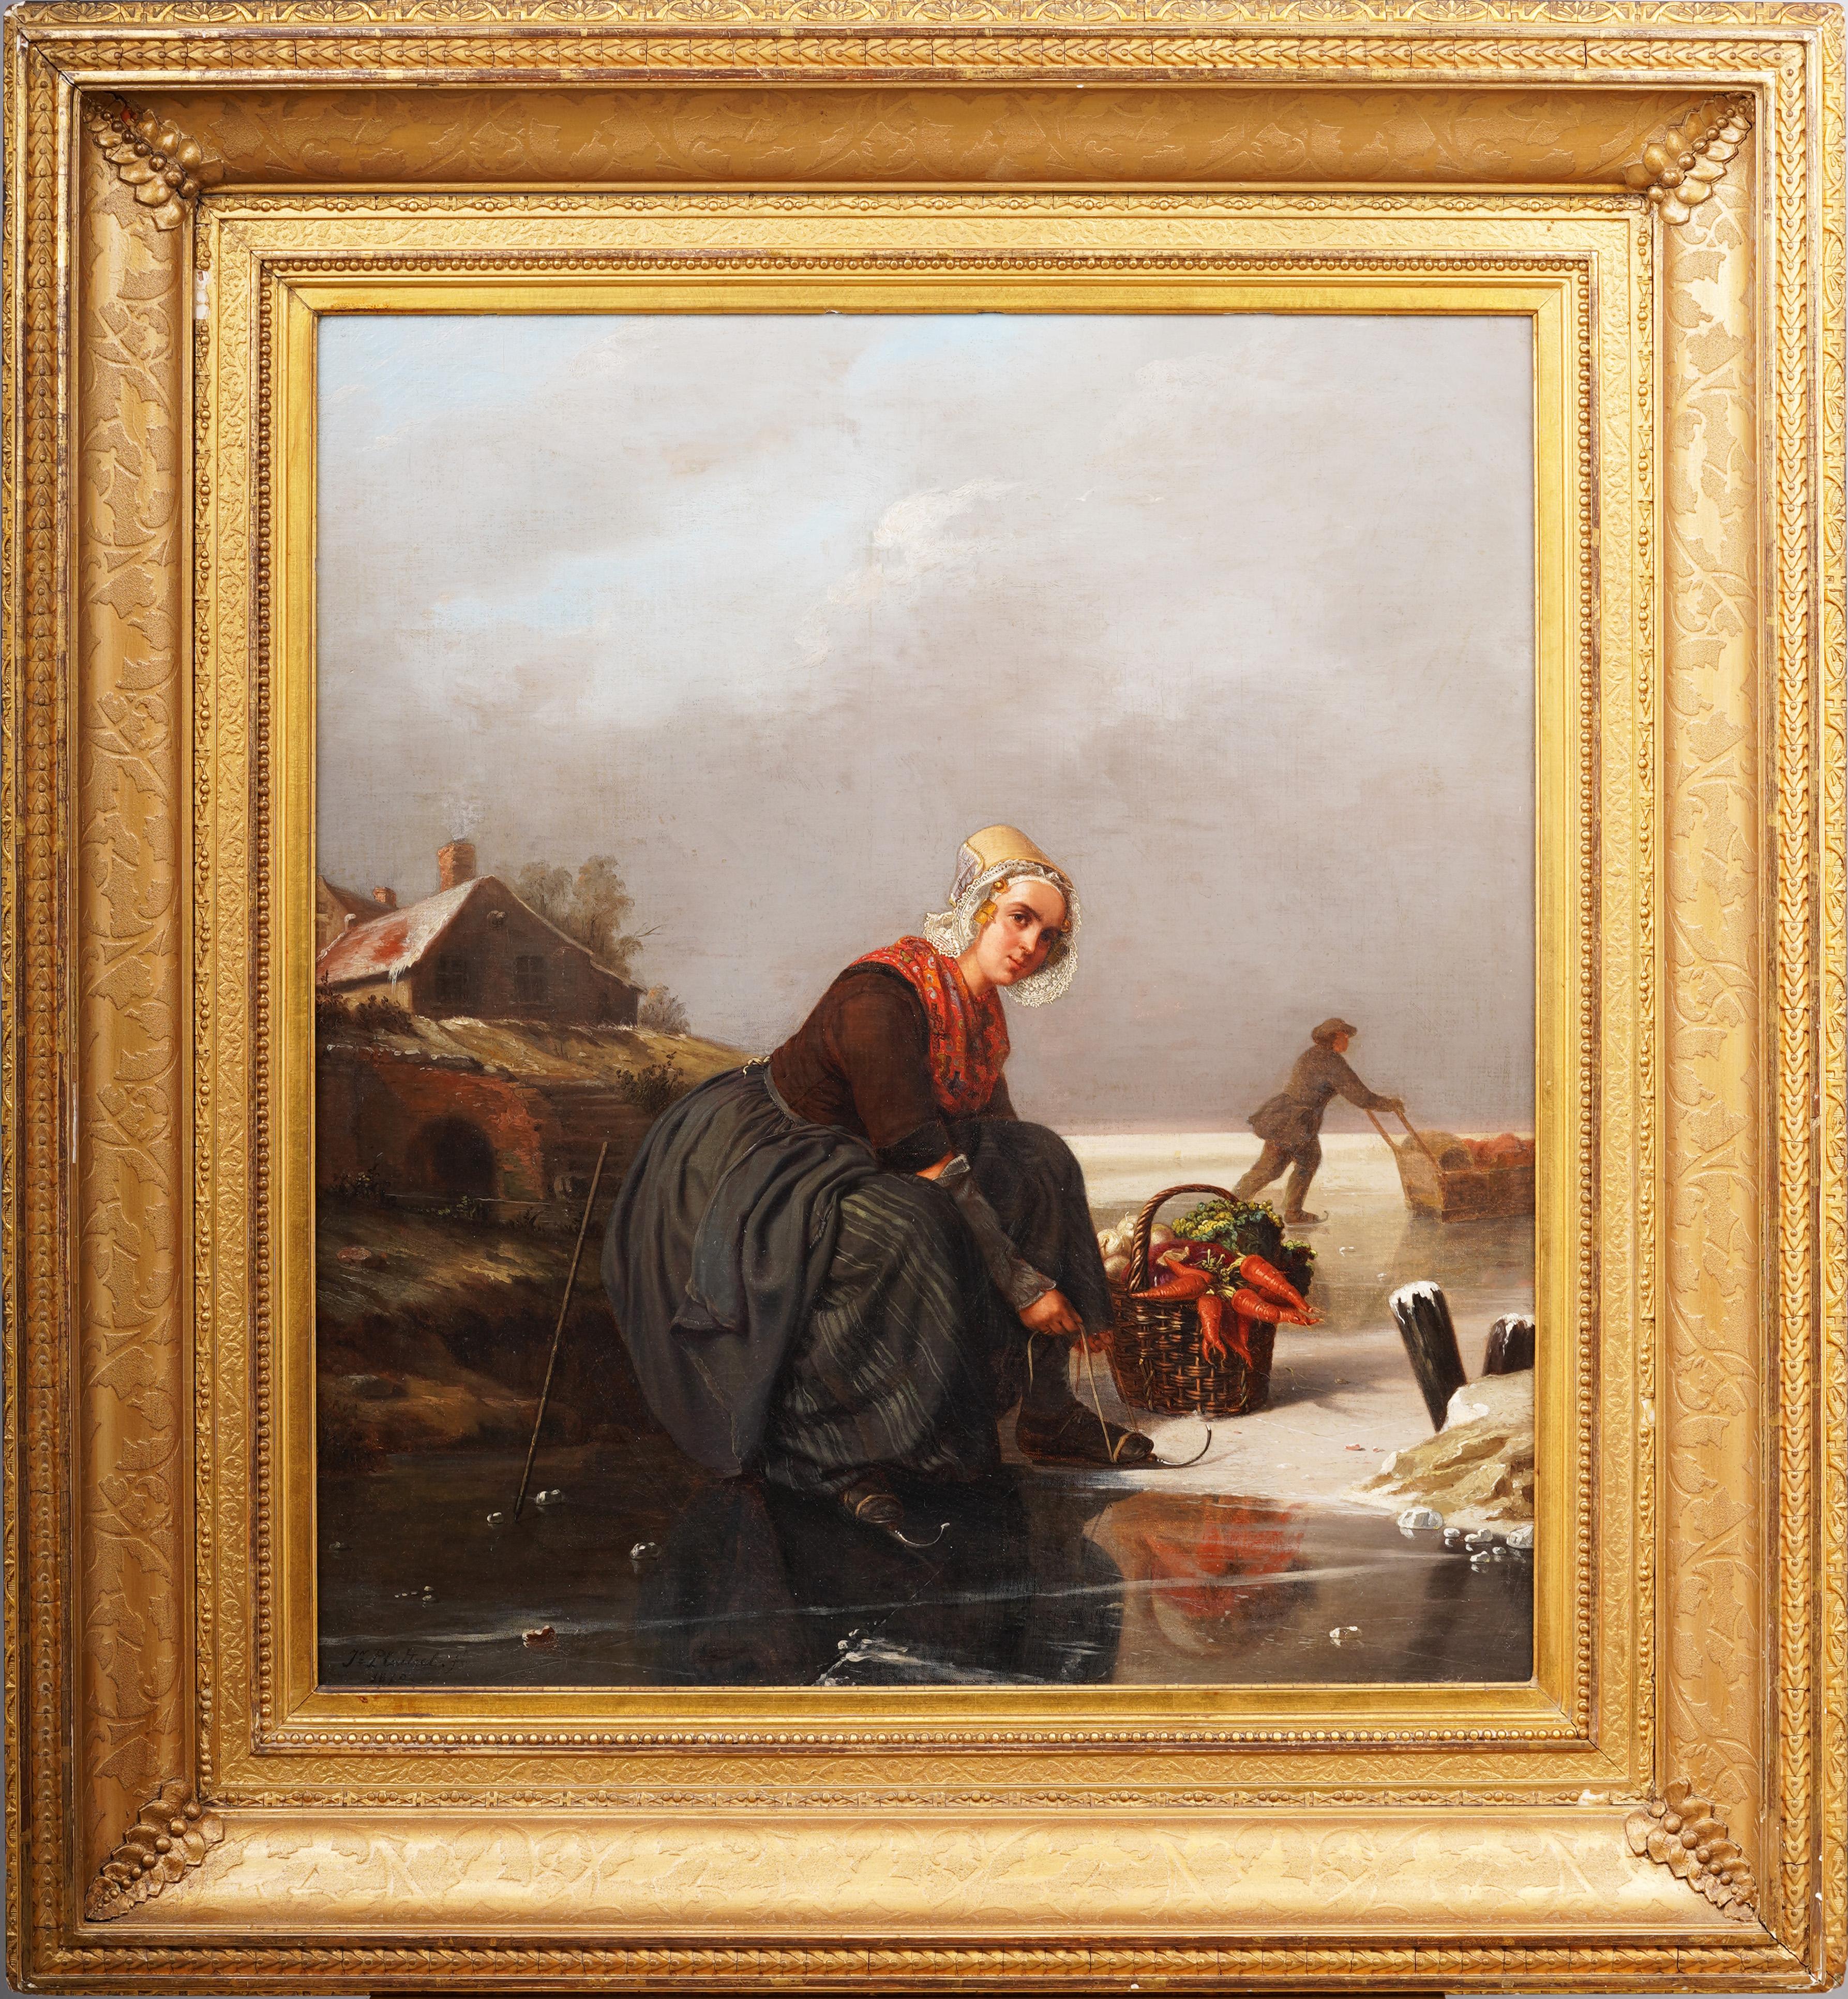 Unknown Portrait Painting – Außergewöhnliche niederländische Schlittenfrau, Winterlandschaft, signiertes Ölgemälde, 19. Jahrhundert